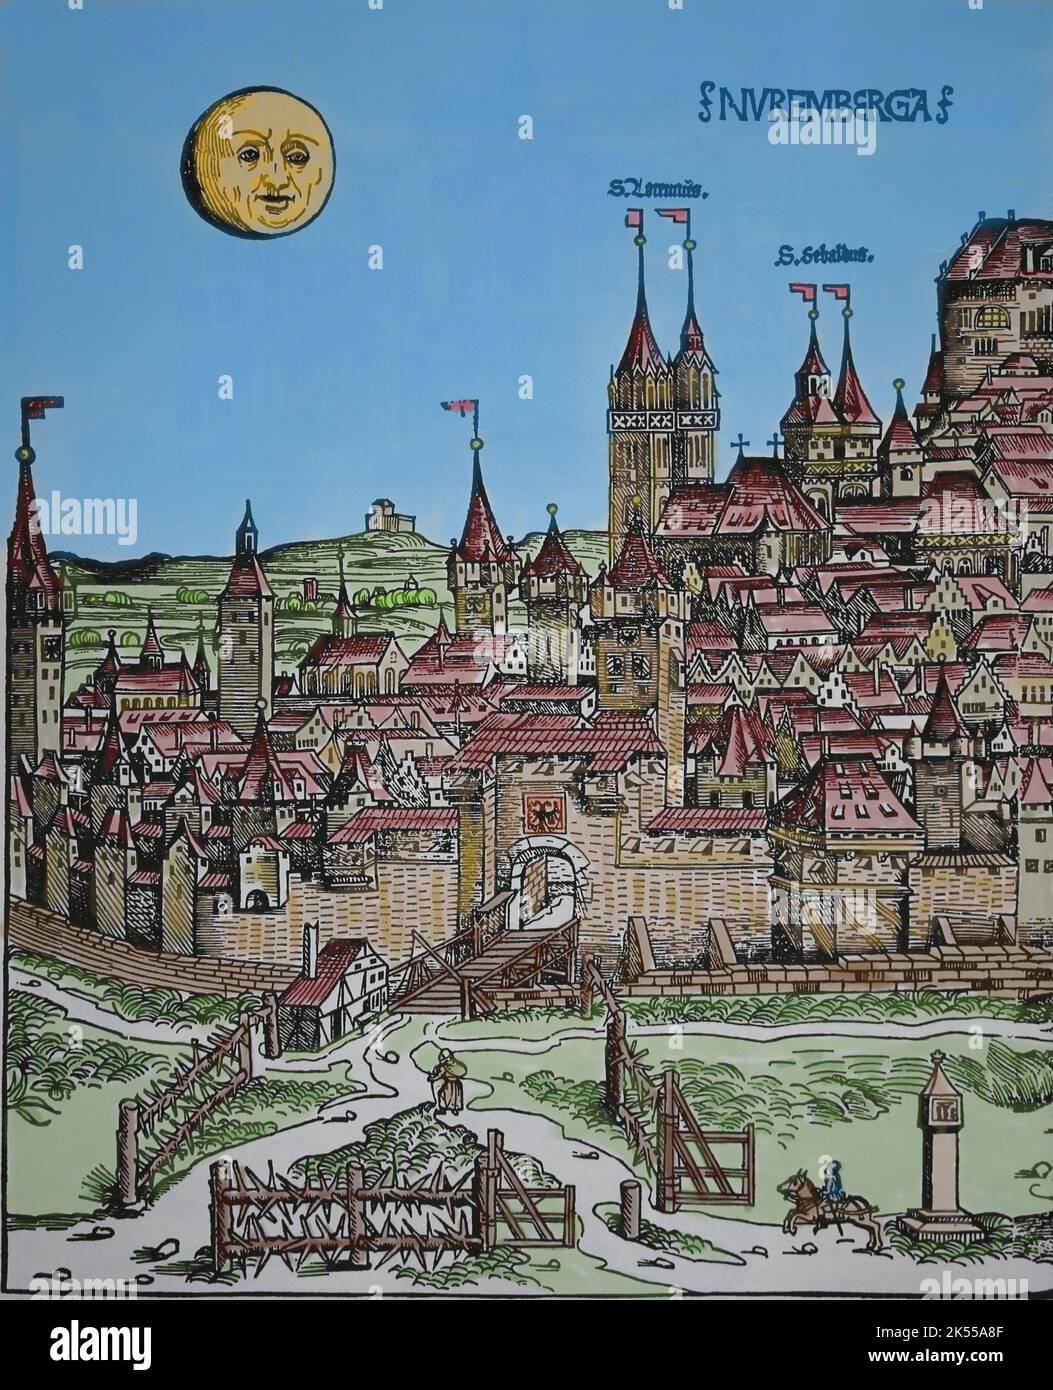 Vista de Nuremberg. Grabado. Crónica de Núremberg, 1493. Foto de stock